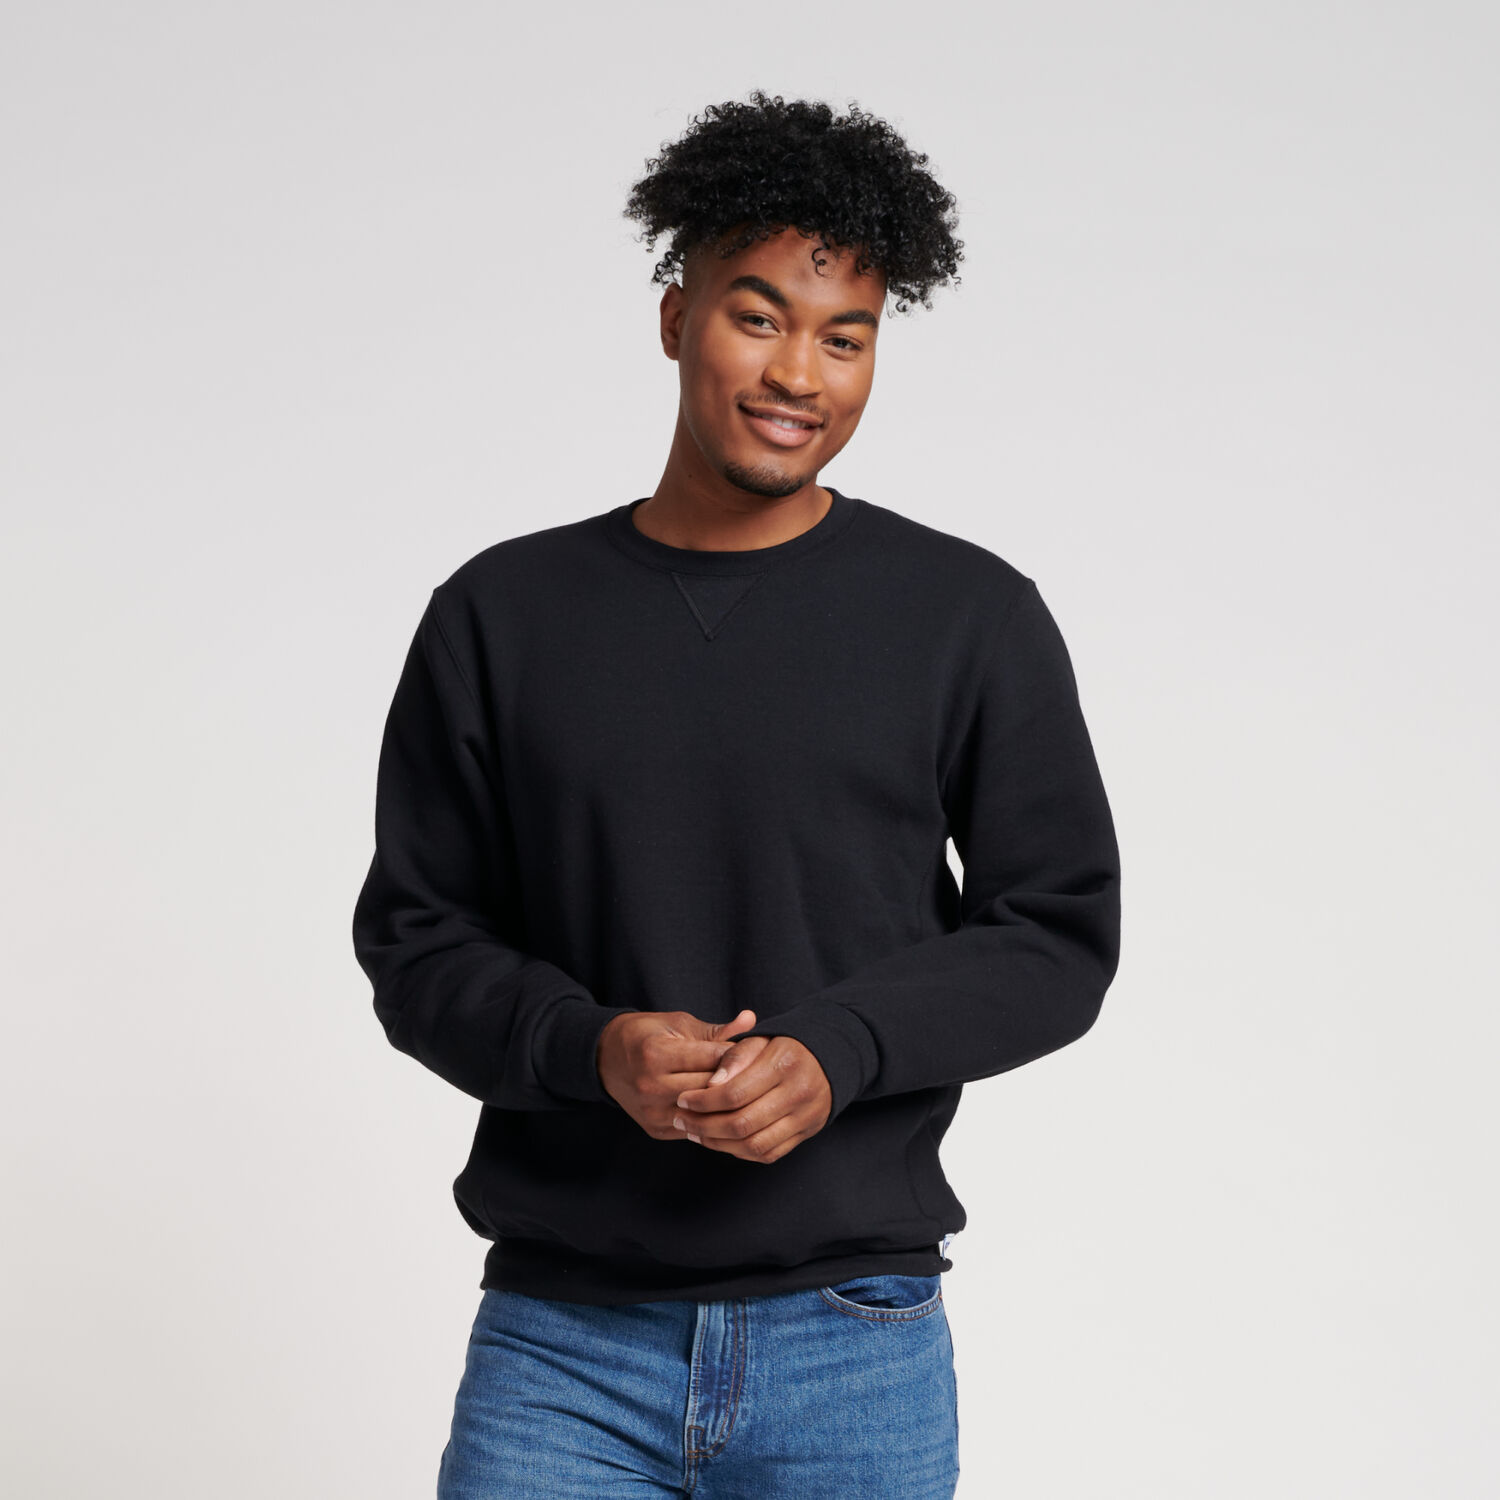 Men's Dri-Power® Fleece Crew Sweatshirt Black